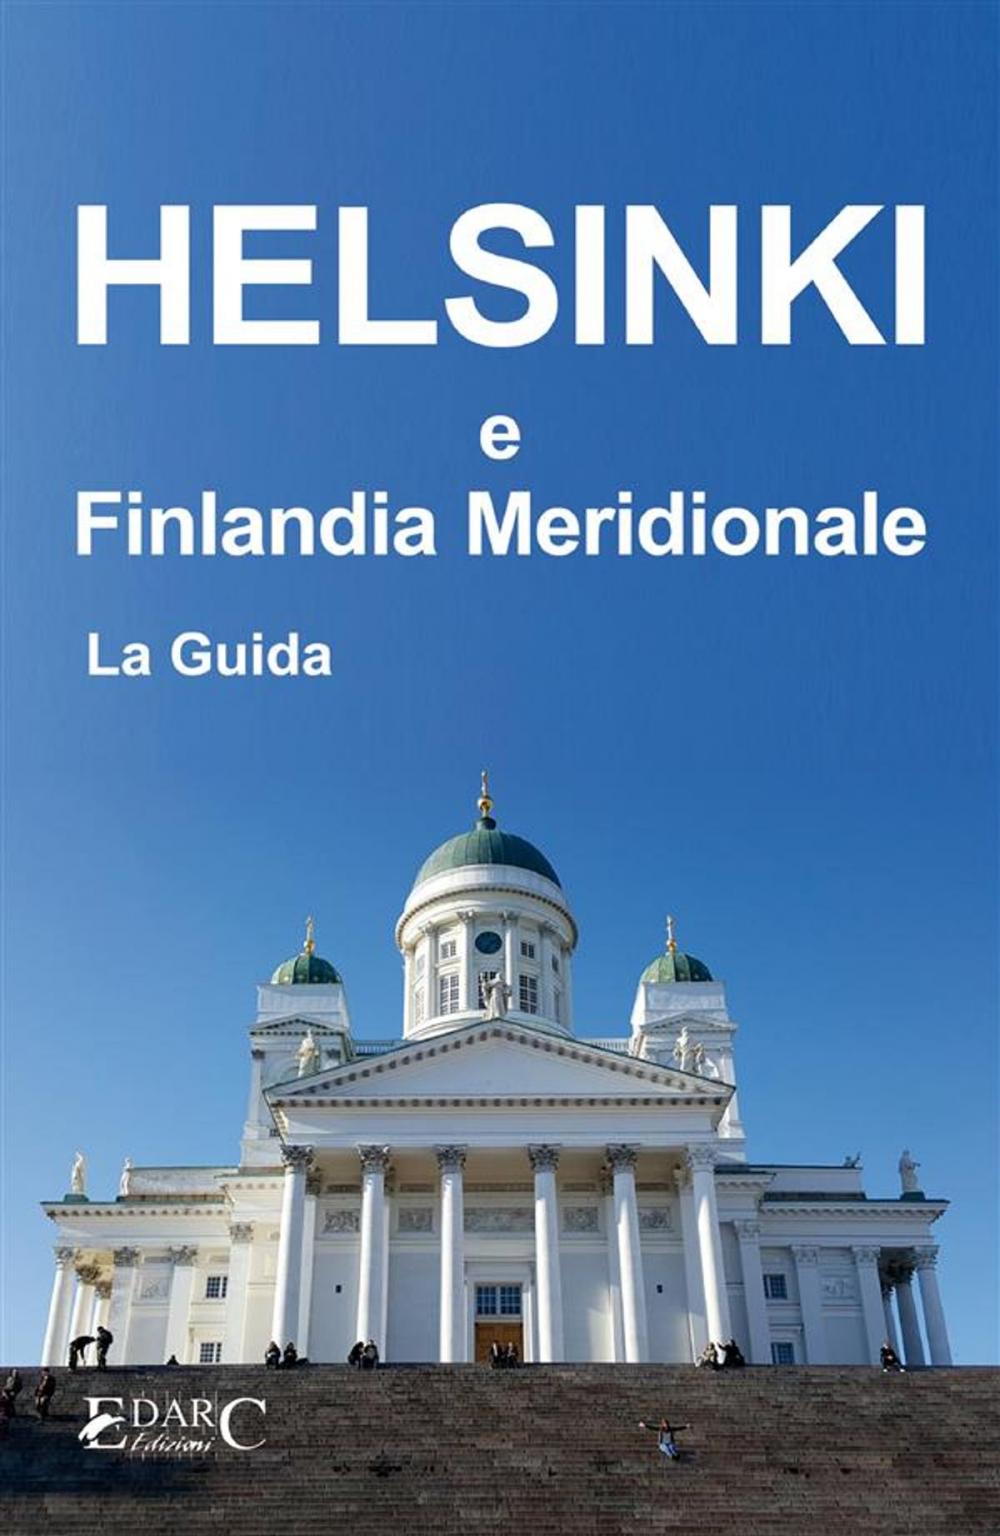 Big bigCover of Helsinki e Finlandia Meridionale - La Guida